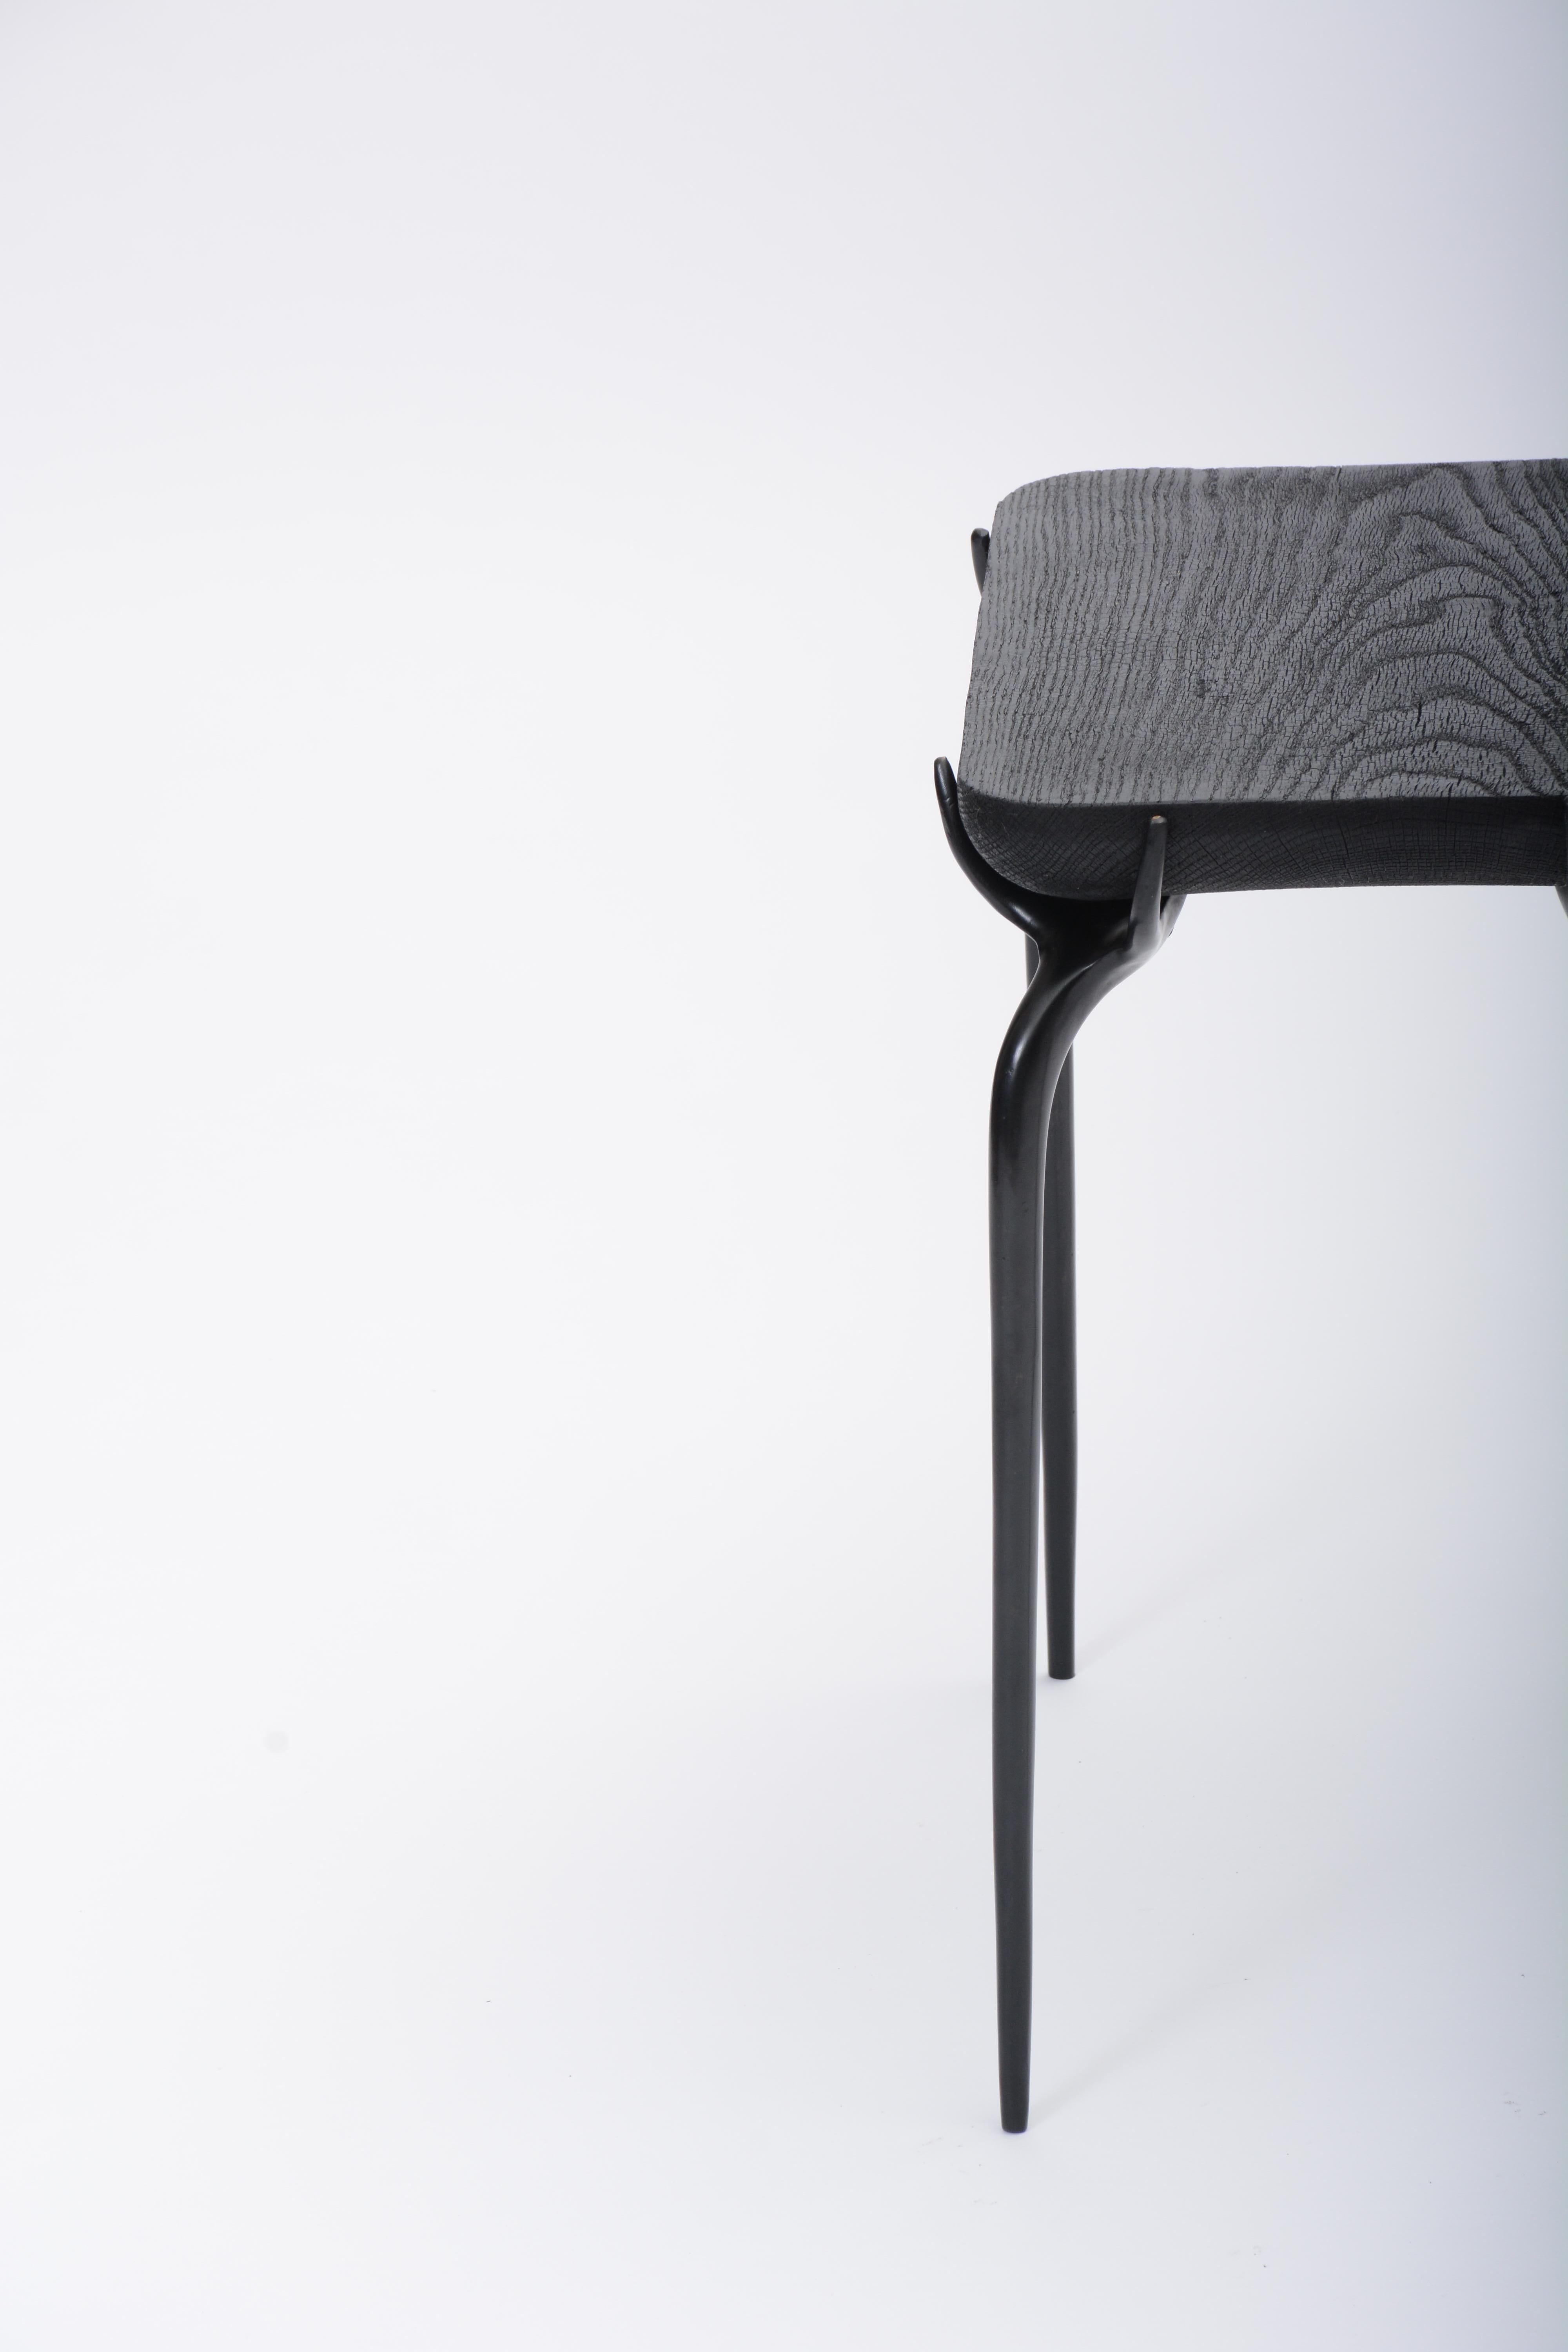 Dunkelbronze-Schmuck-Beistelltisch mit Holzplatte aus gebrannter schwarzer Eiche von Elan Atelier (Europäisch)